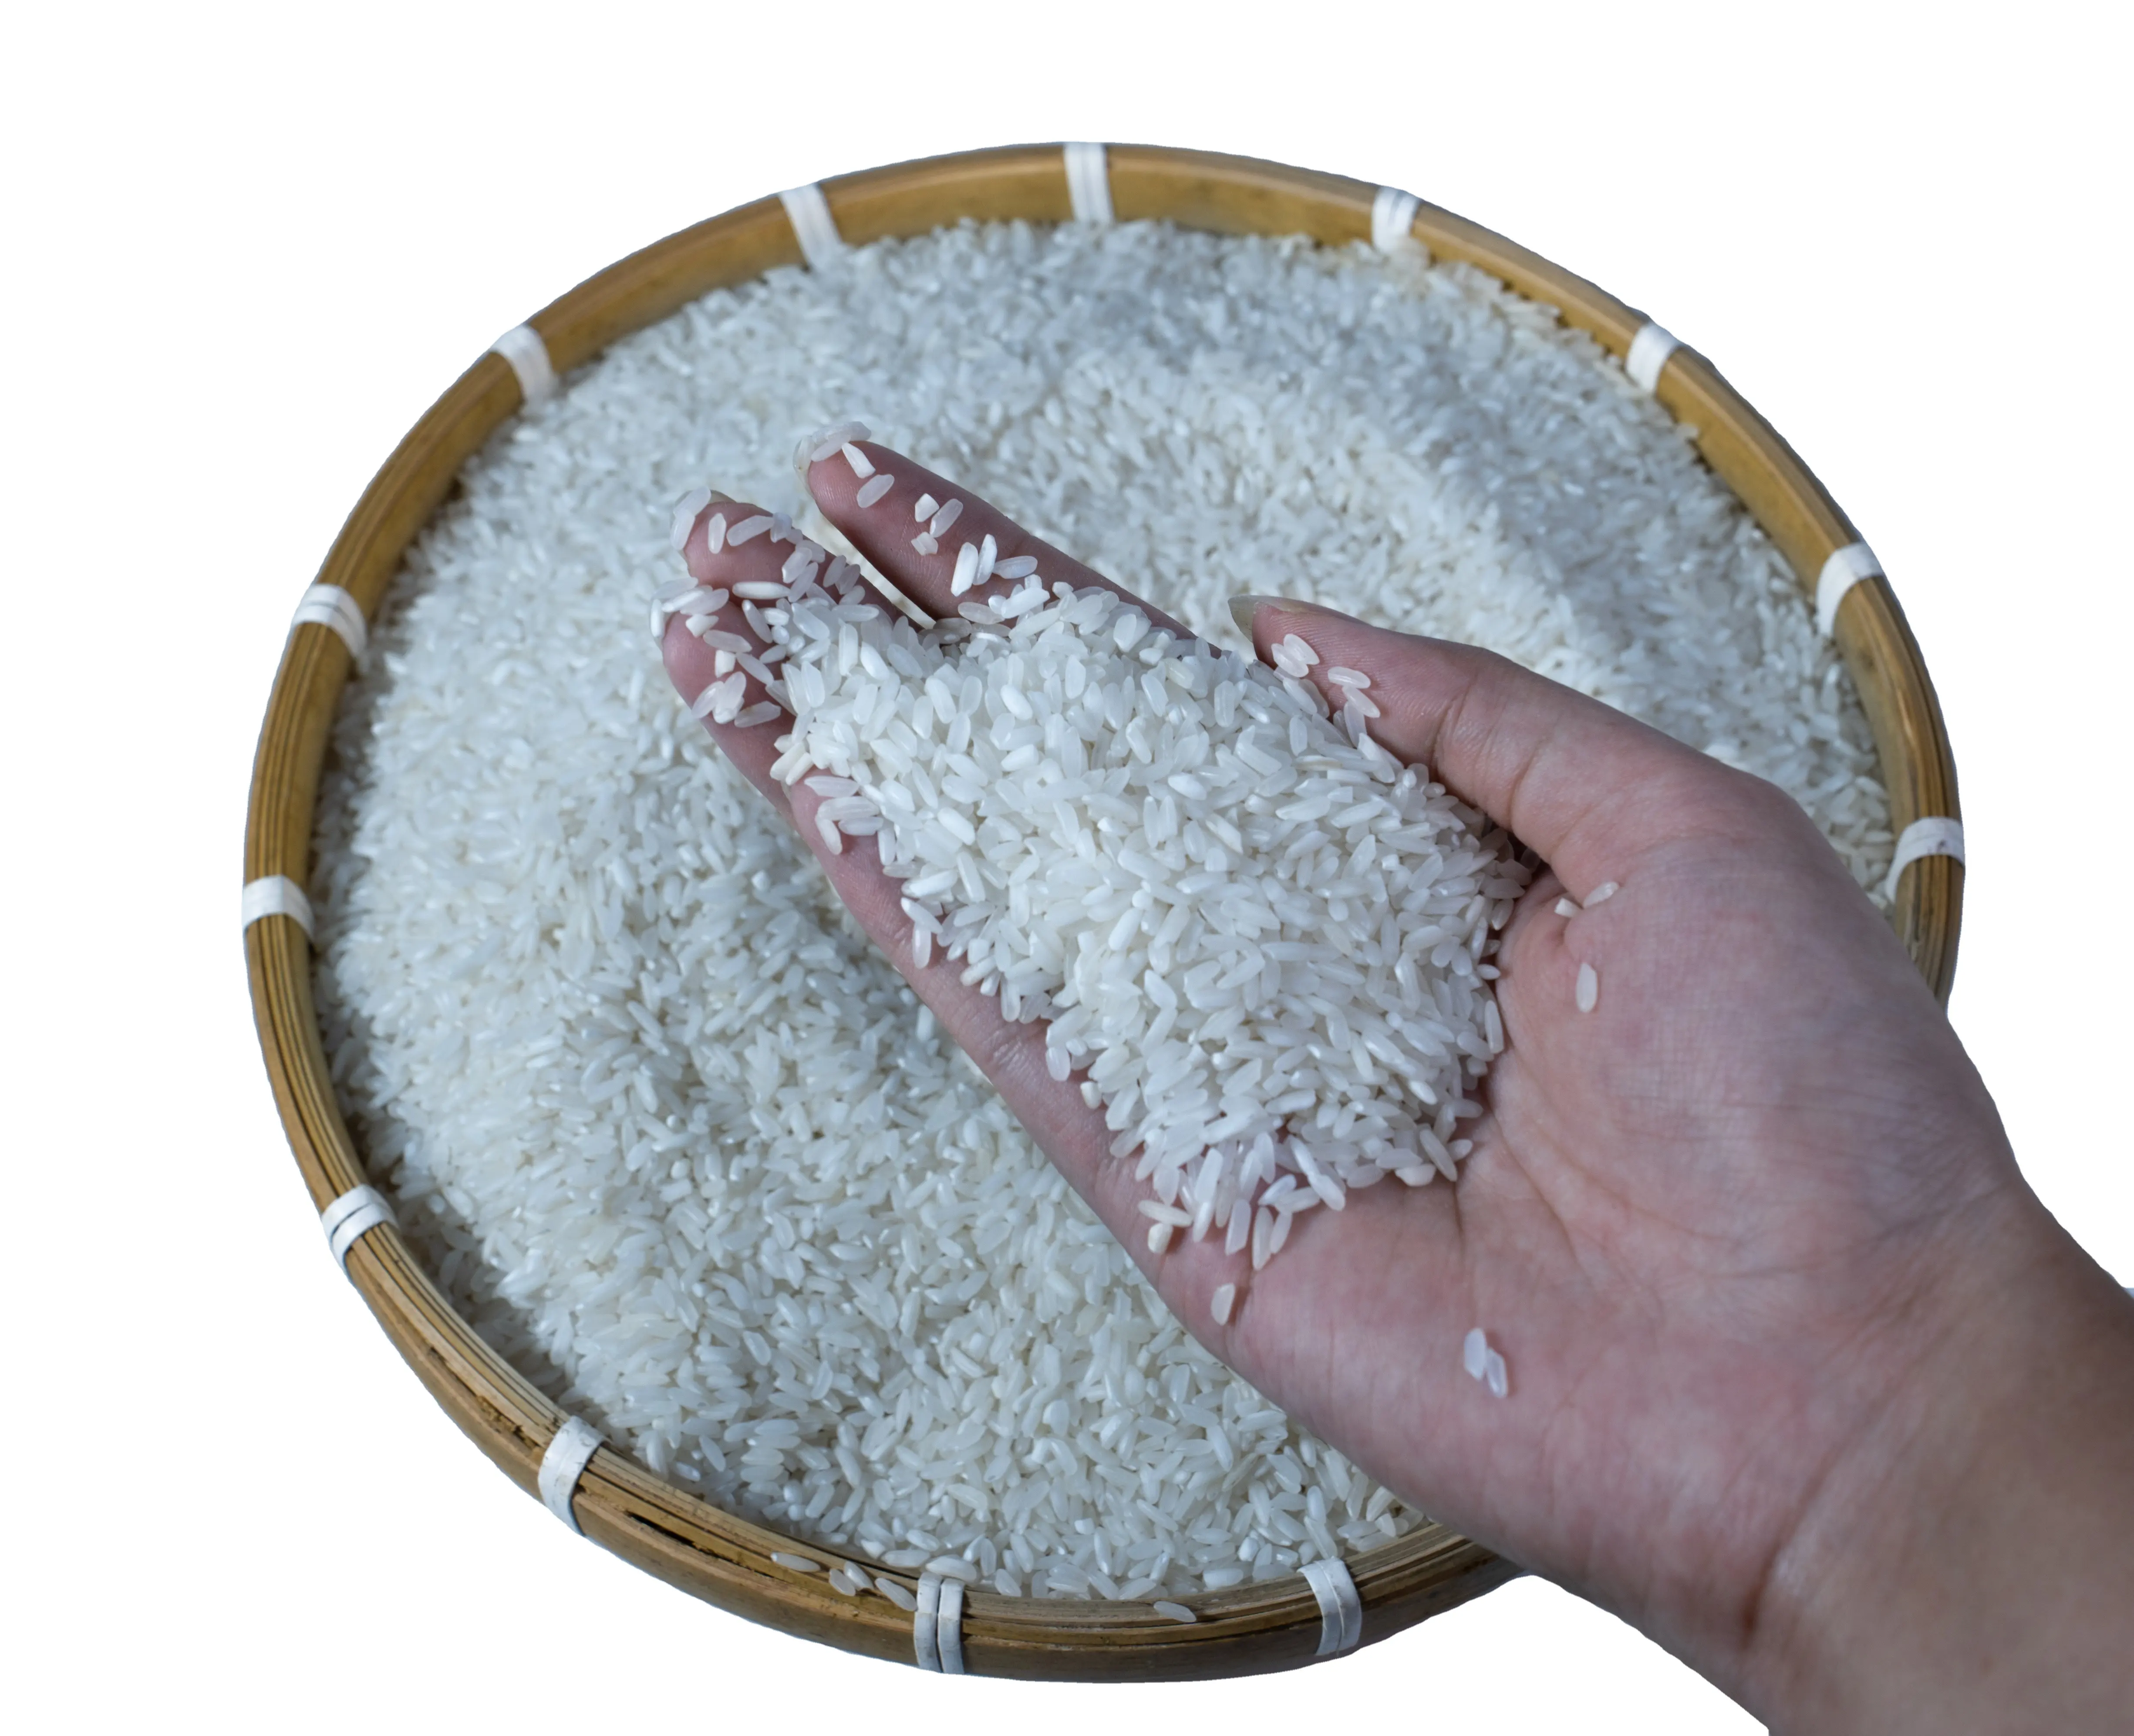 Arroz blanco roto 5% de grano largo Premium vietnamita: precios competitivos y ofertas exclusivas para compradores de calidad, arroz vietnamita